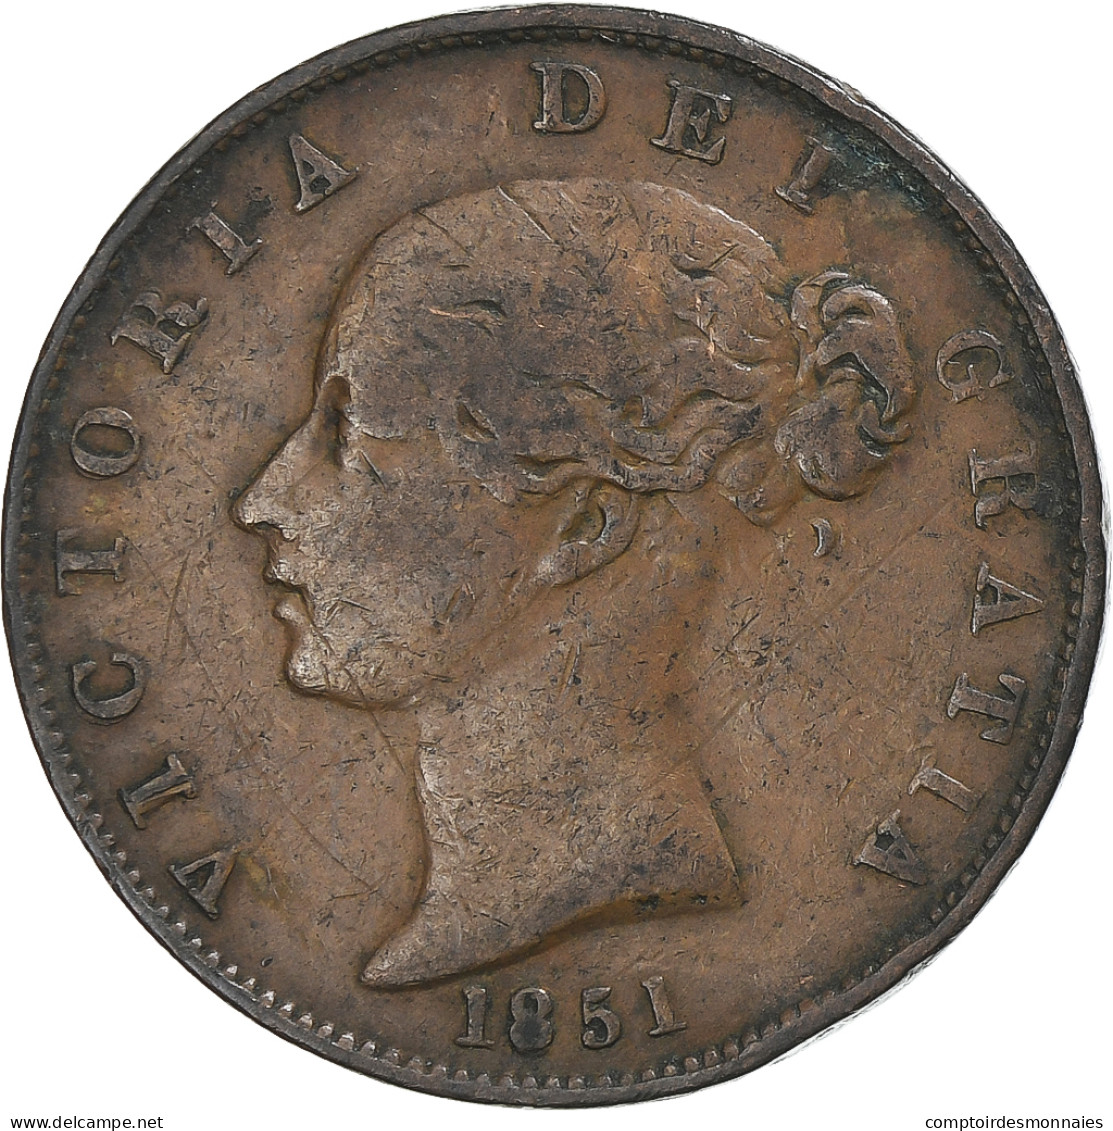 Grande-Bretagne, Victoria, 1/2 Penny, 1851, TB+, Cuivre, KM:726 - C. 1/2 Penny